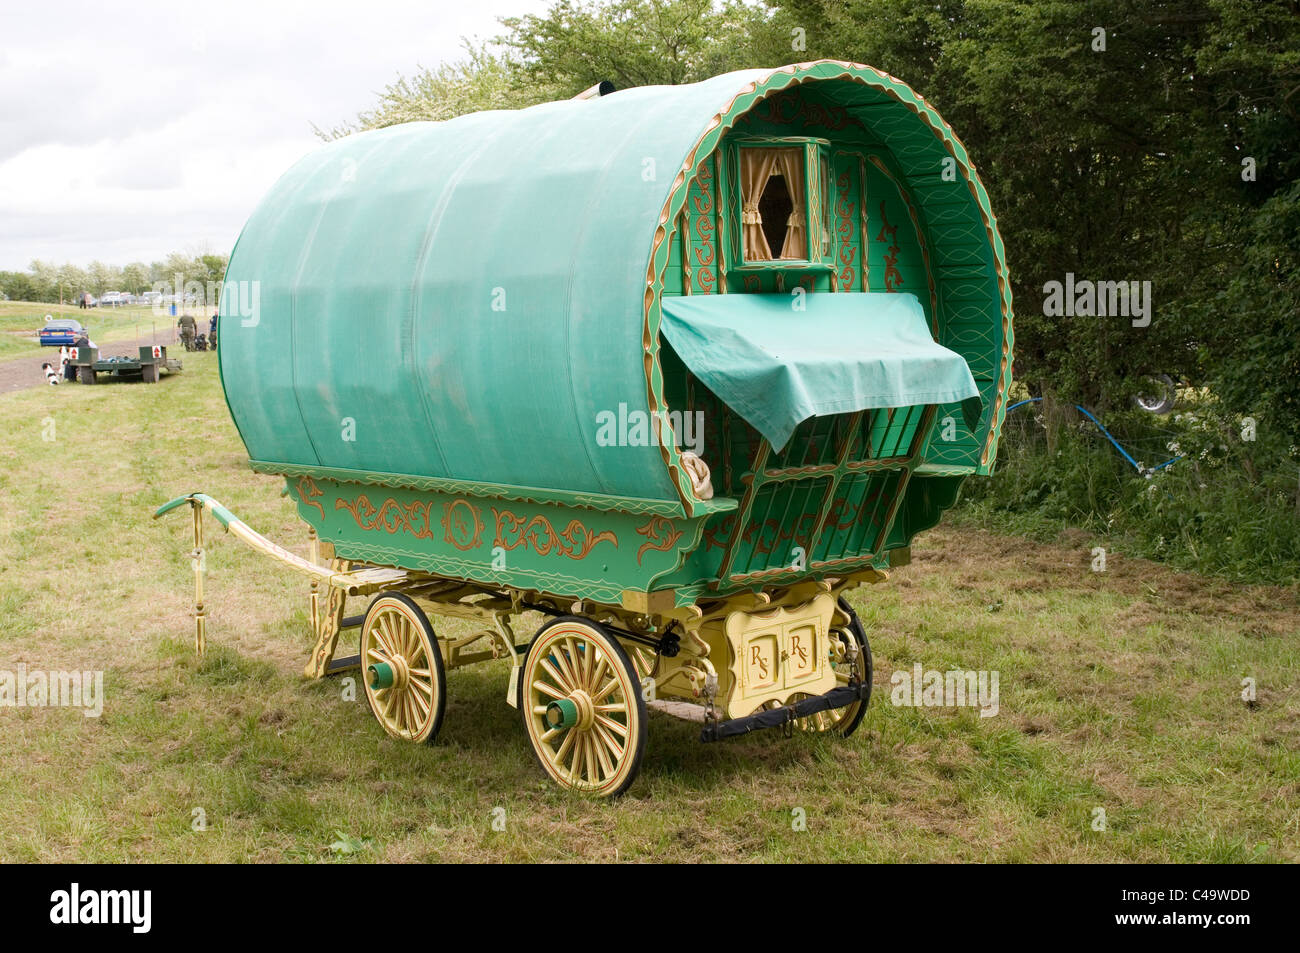 Gypsy caravan Caravan tradizionali in legno ruota in legno ruote trainato da cavalli viaggiatori viaggiatori Zingari Foto Stock